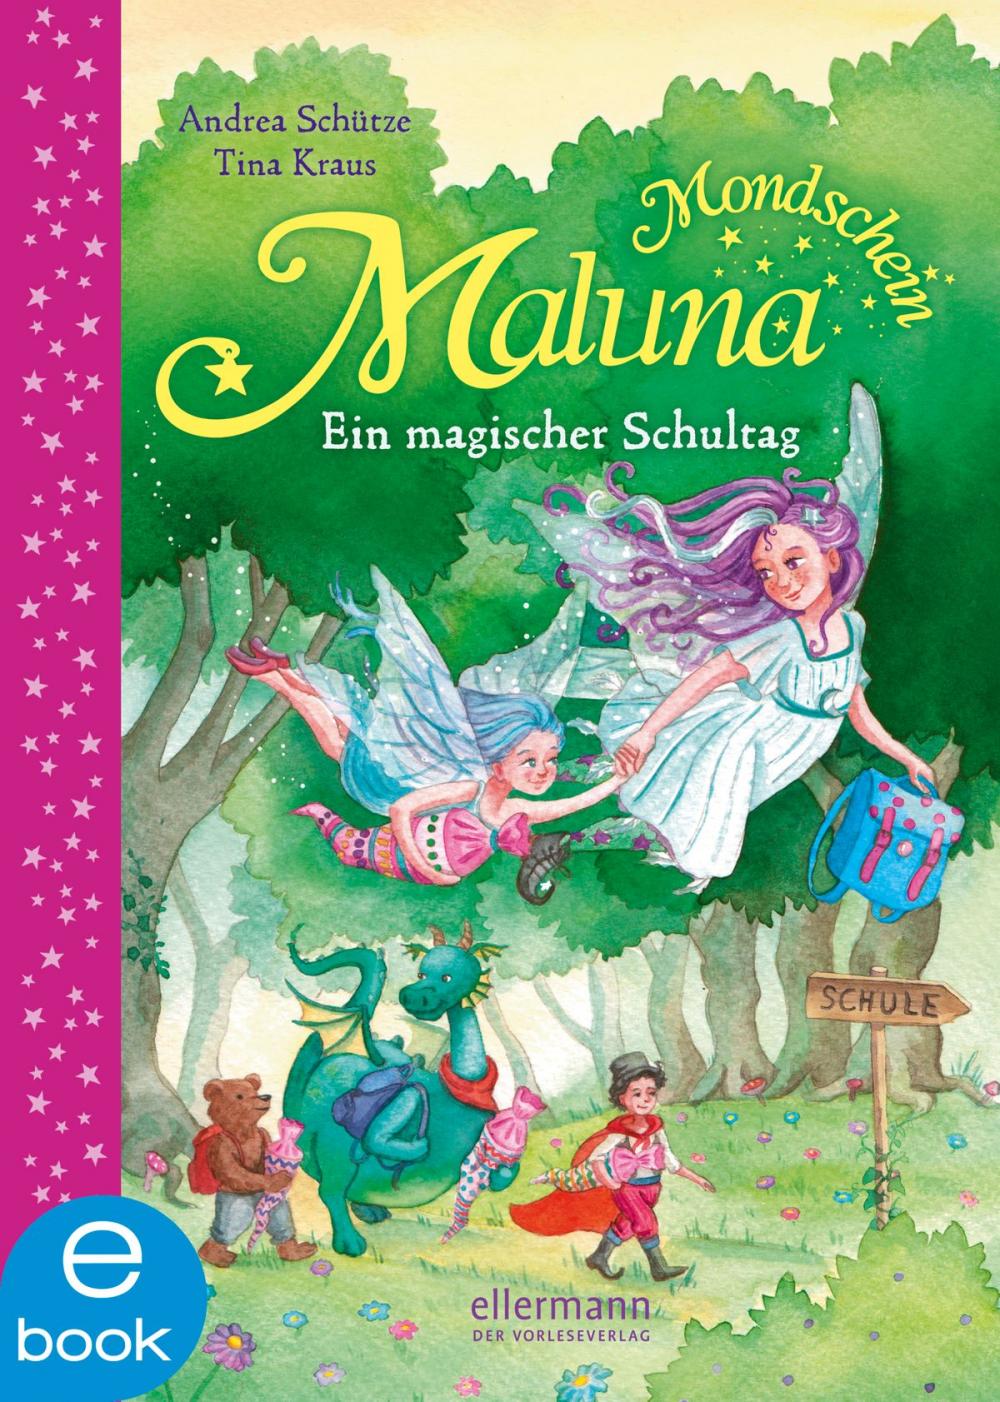 Big bigCover of Maluna Mondschein - Ein magischer Schultag